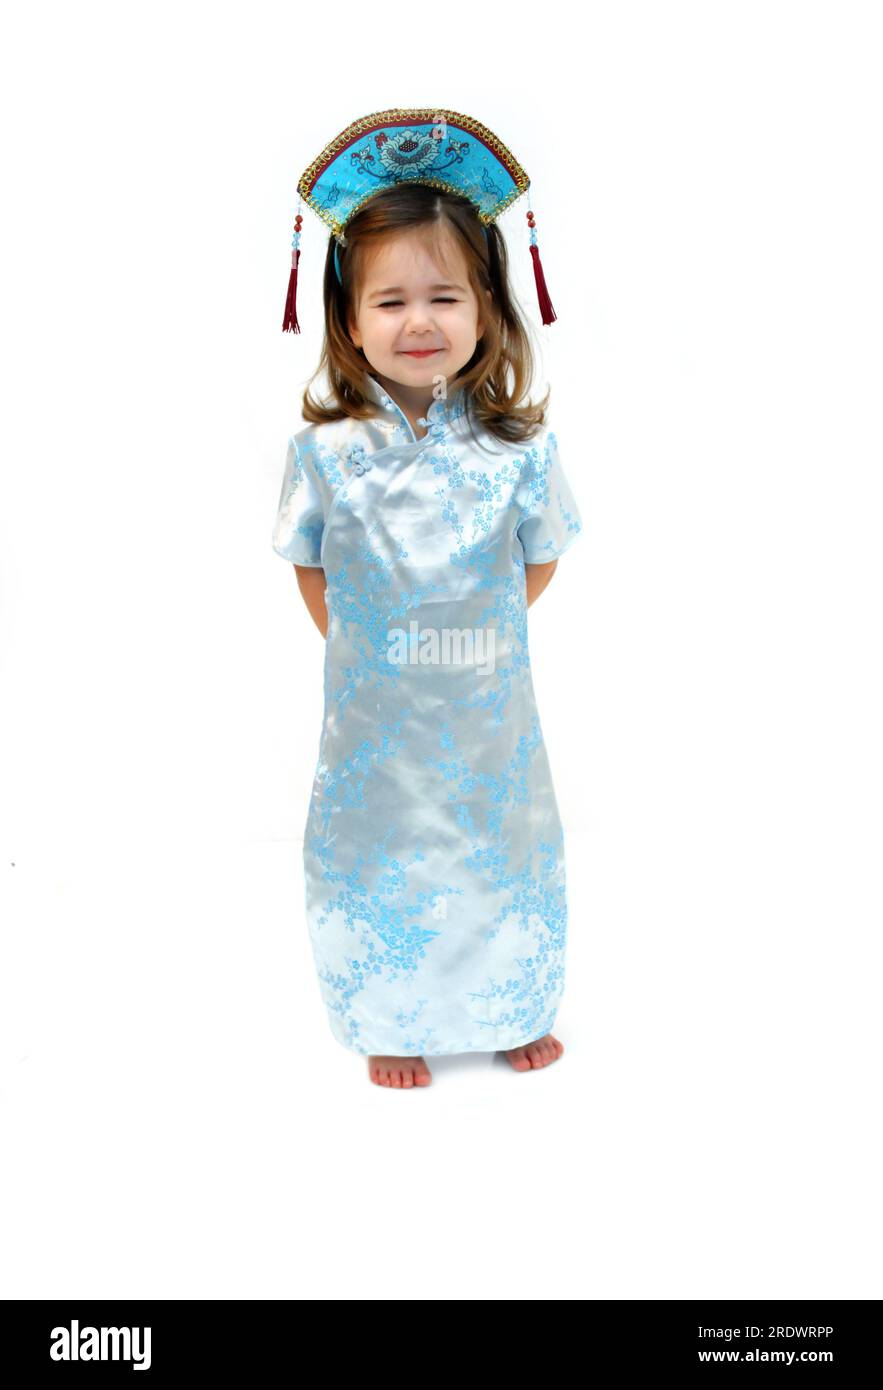 Bambina, che indossa un abito e un berretto in seta in stile kimono, che mostra come sarebbe una bambina orientale. Foto Stock